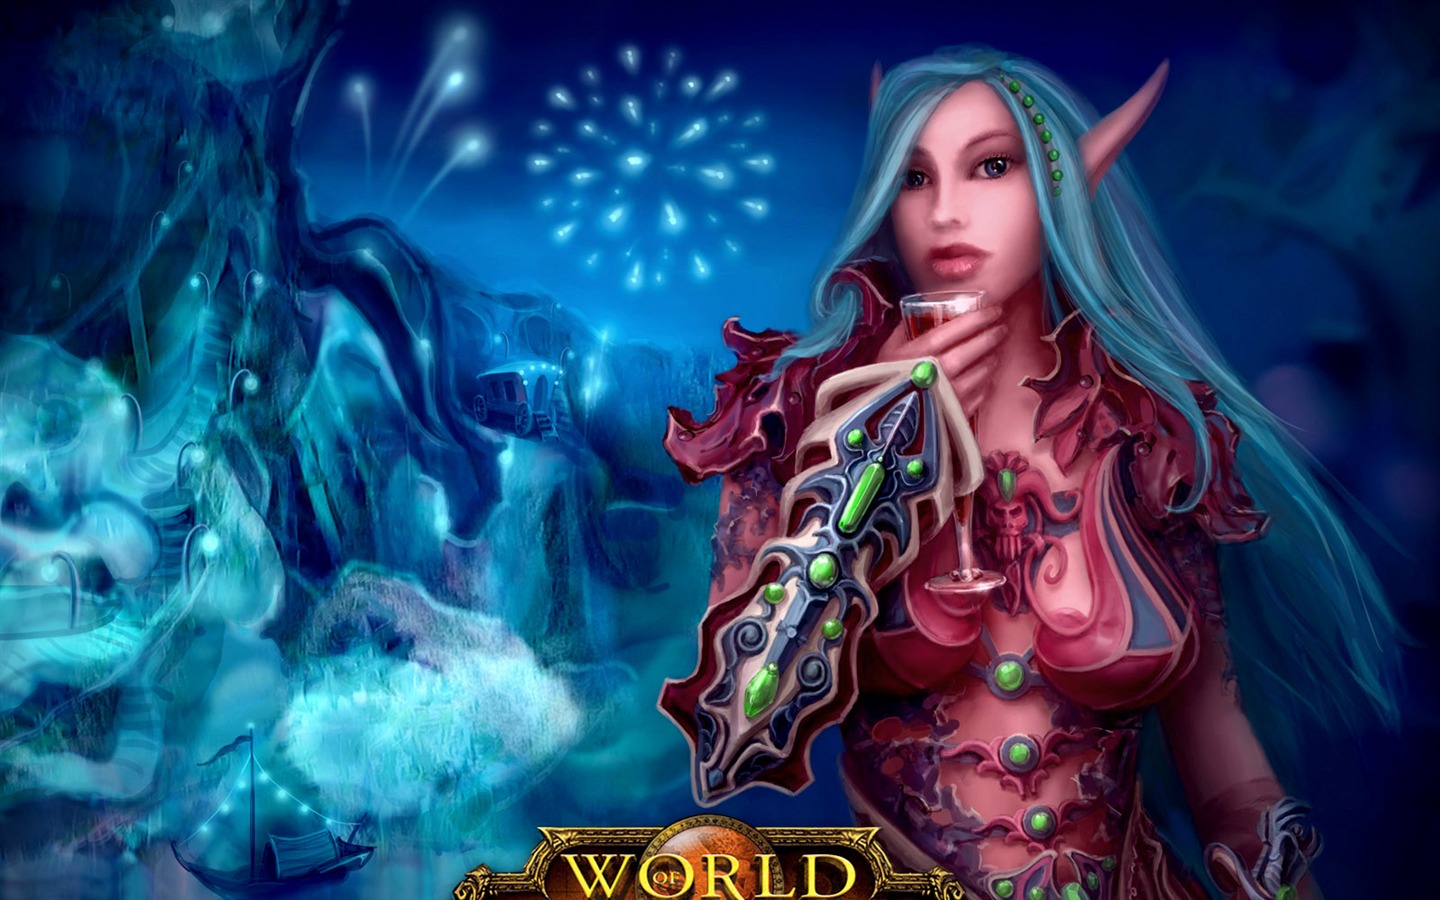 World of Warcraft 魔獸世界高清壁紙(二) #15 - 1440x900